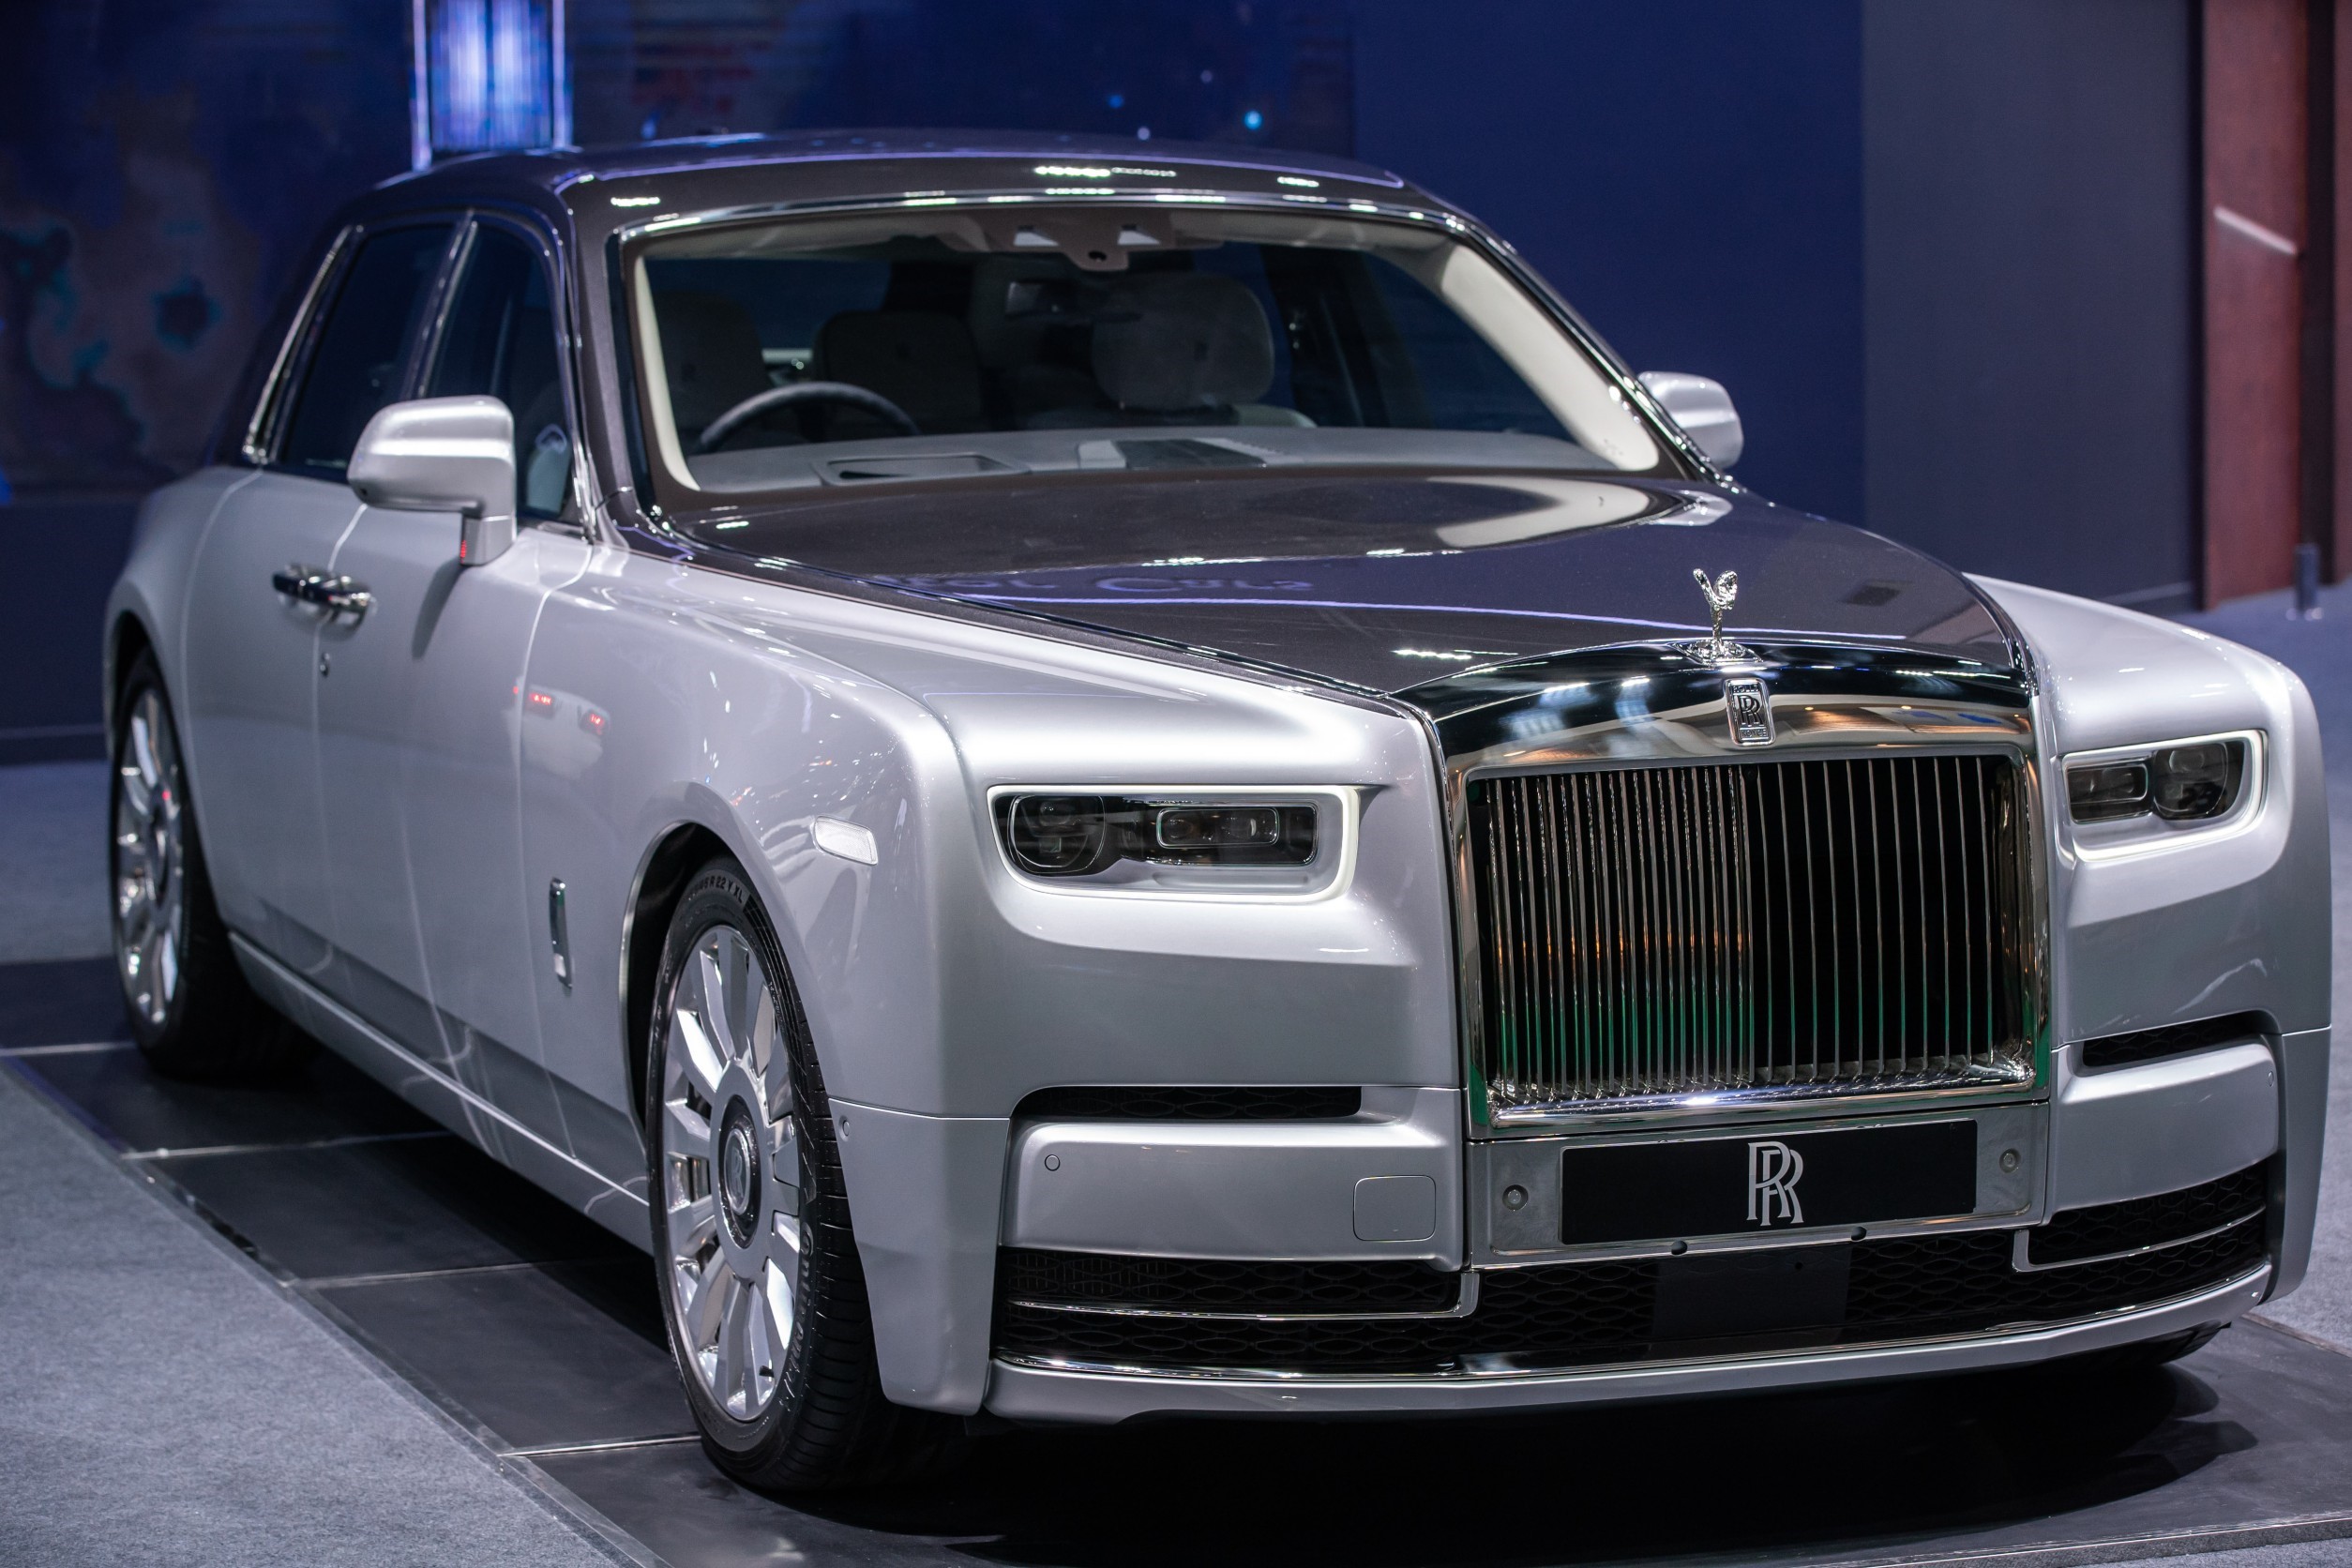 มอเตอร์โชว์ 2020 : ส่องความน่าหลงใหล Rolls-Royce Phantom ที่สุดแห่งเรื่อง “ราคา”